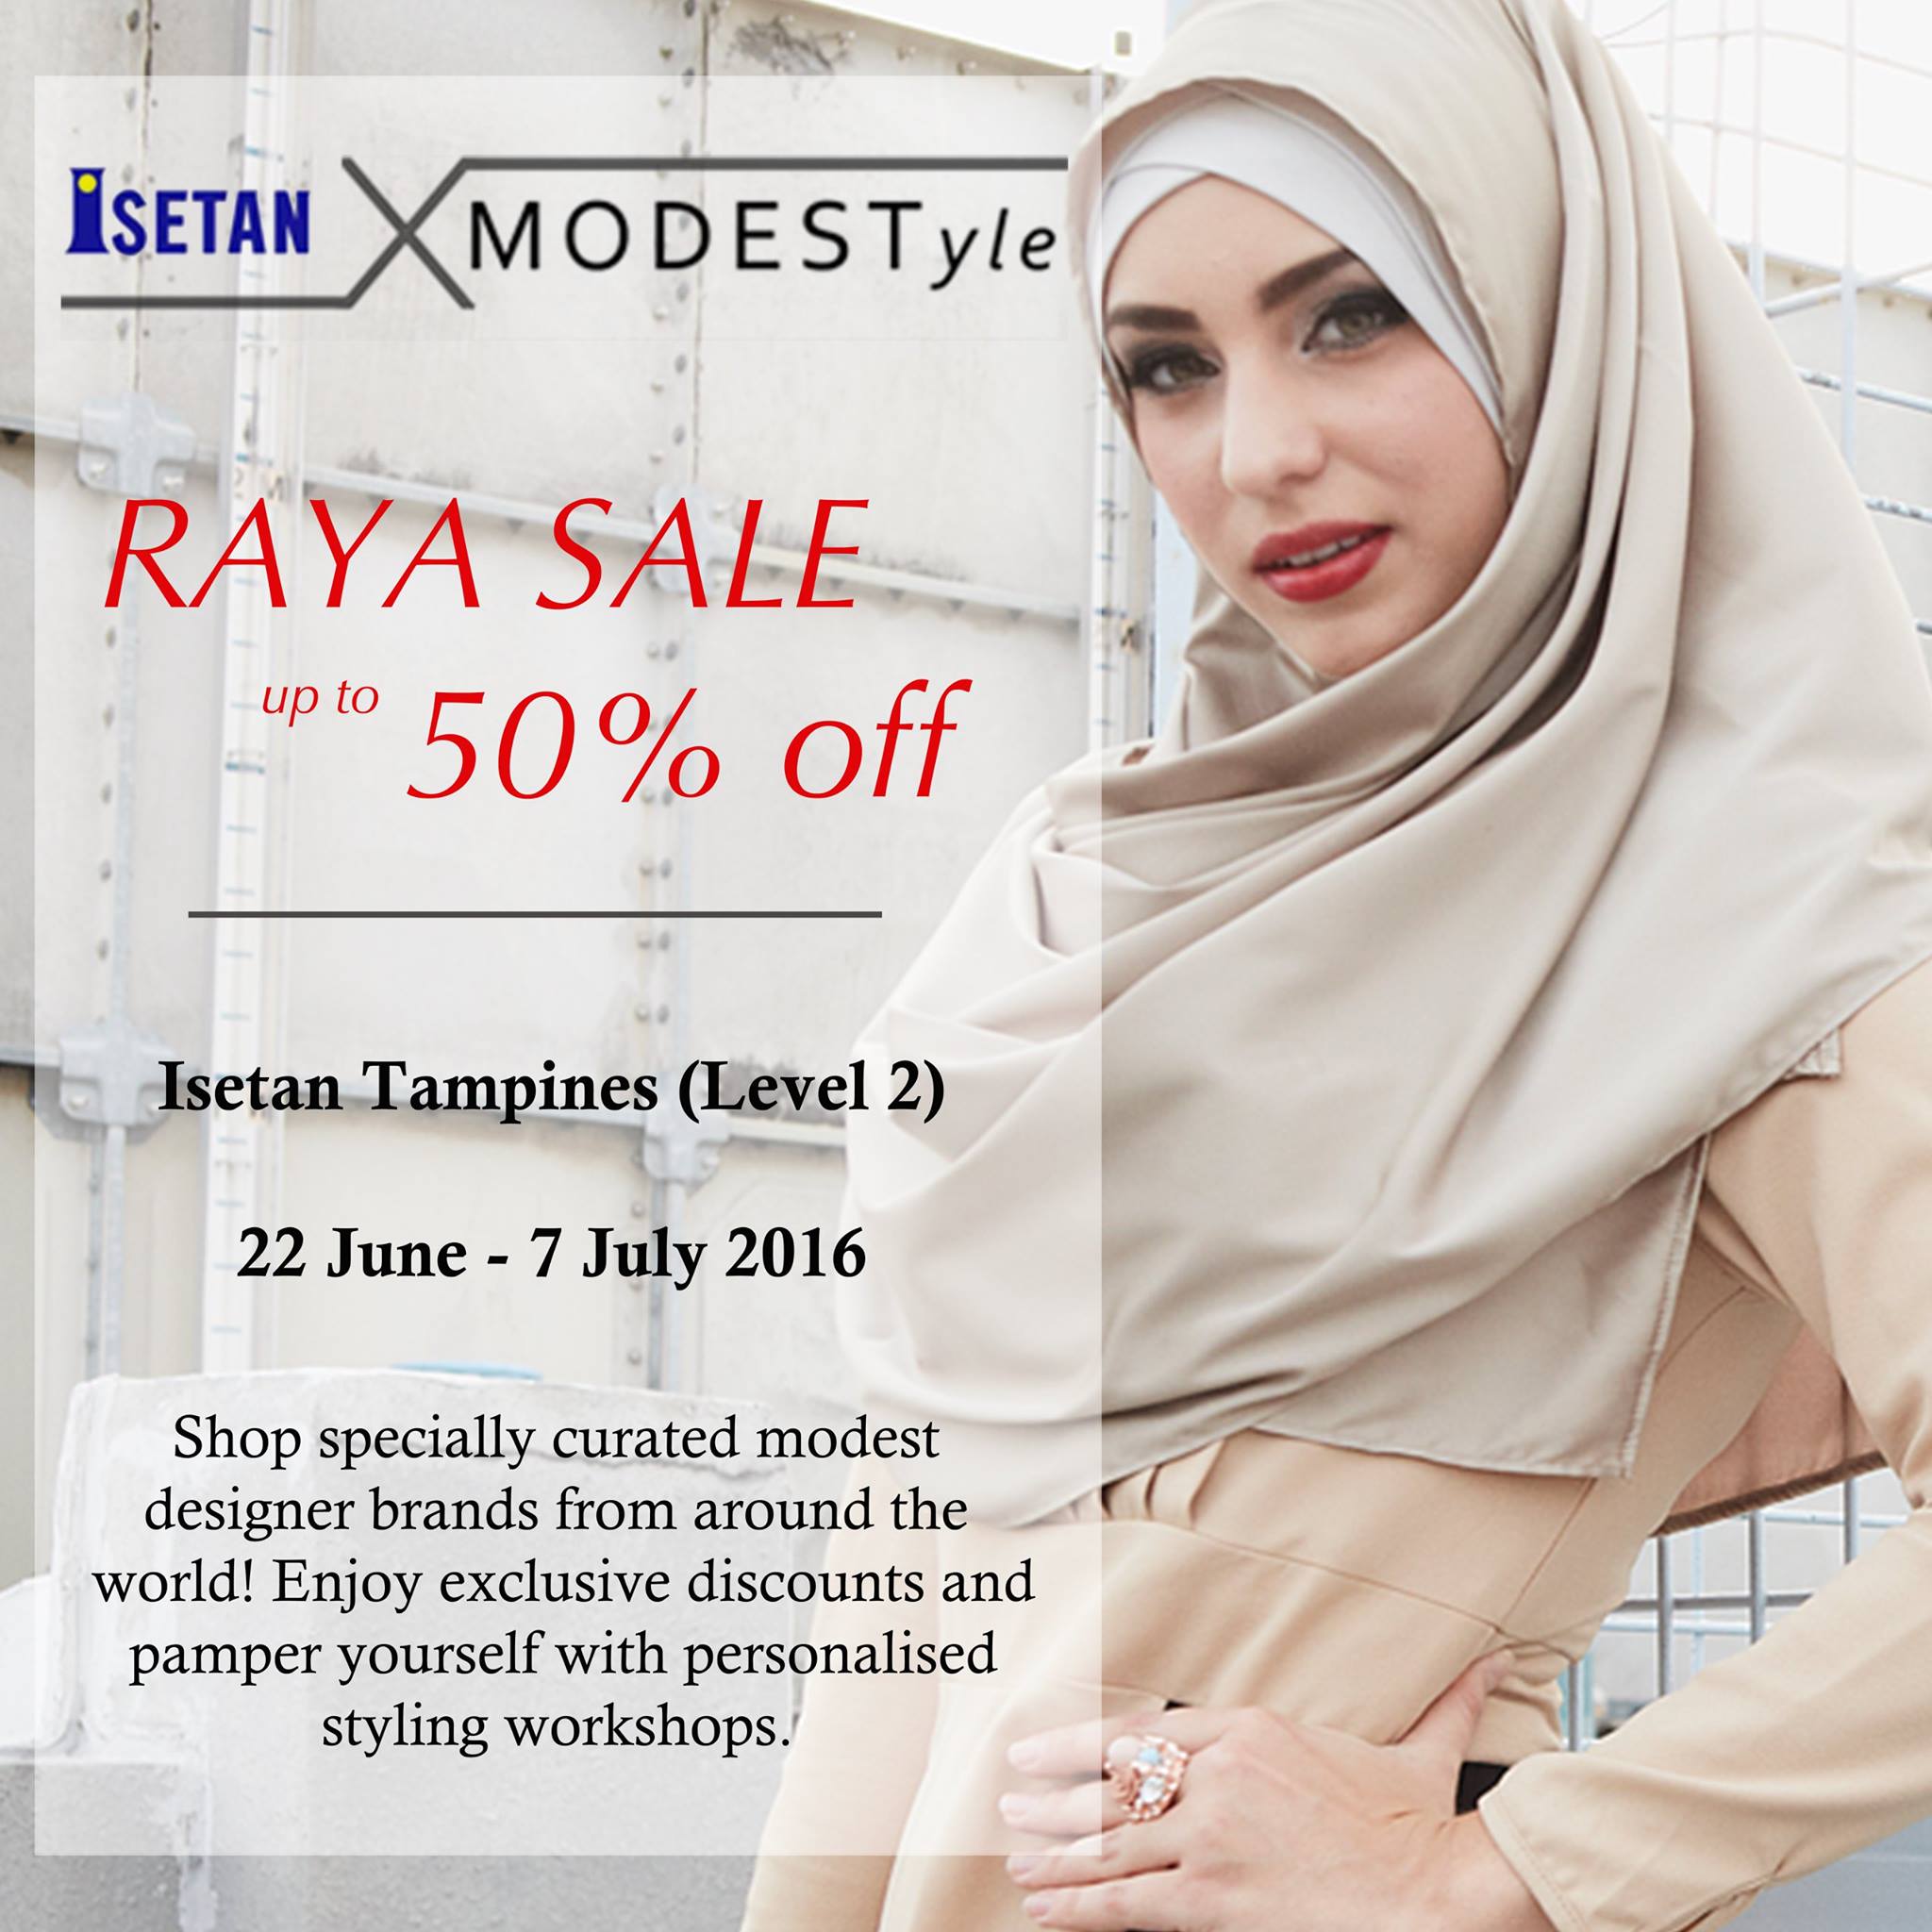 MODESTyle Raya Sale Singapore Promotion 22 Jun to 7 Jul 2016